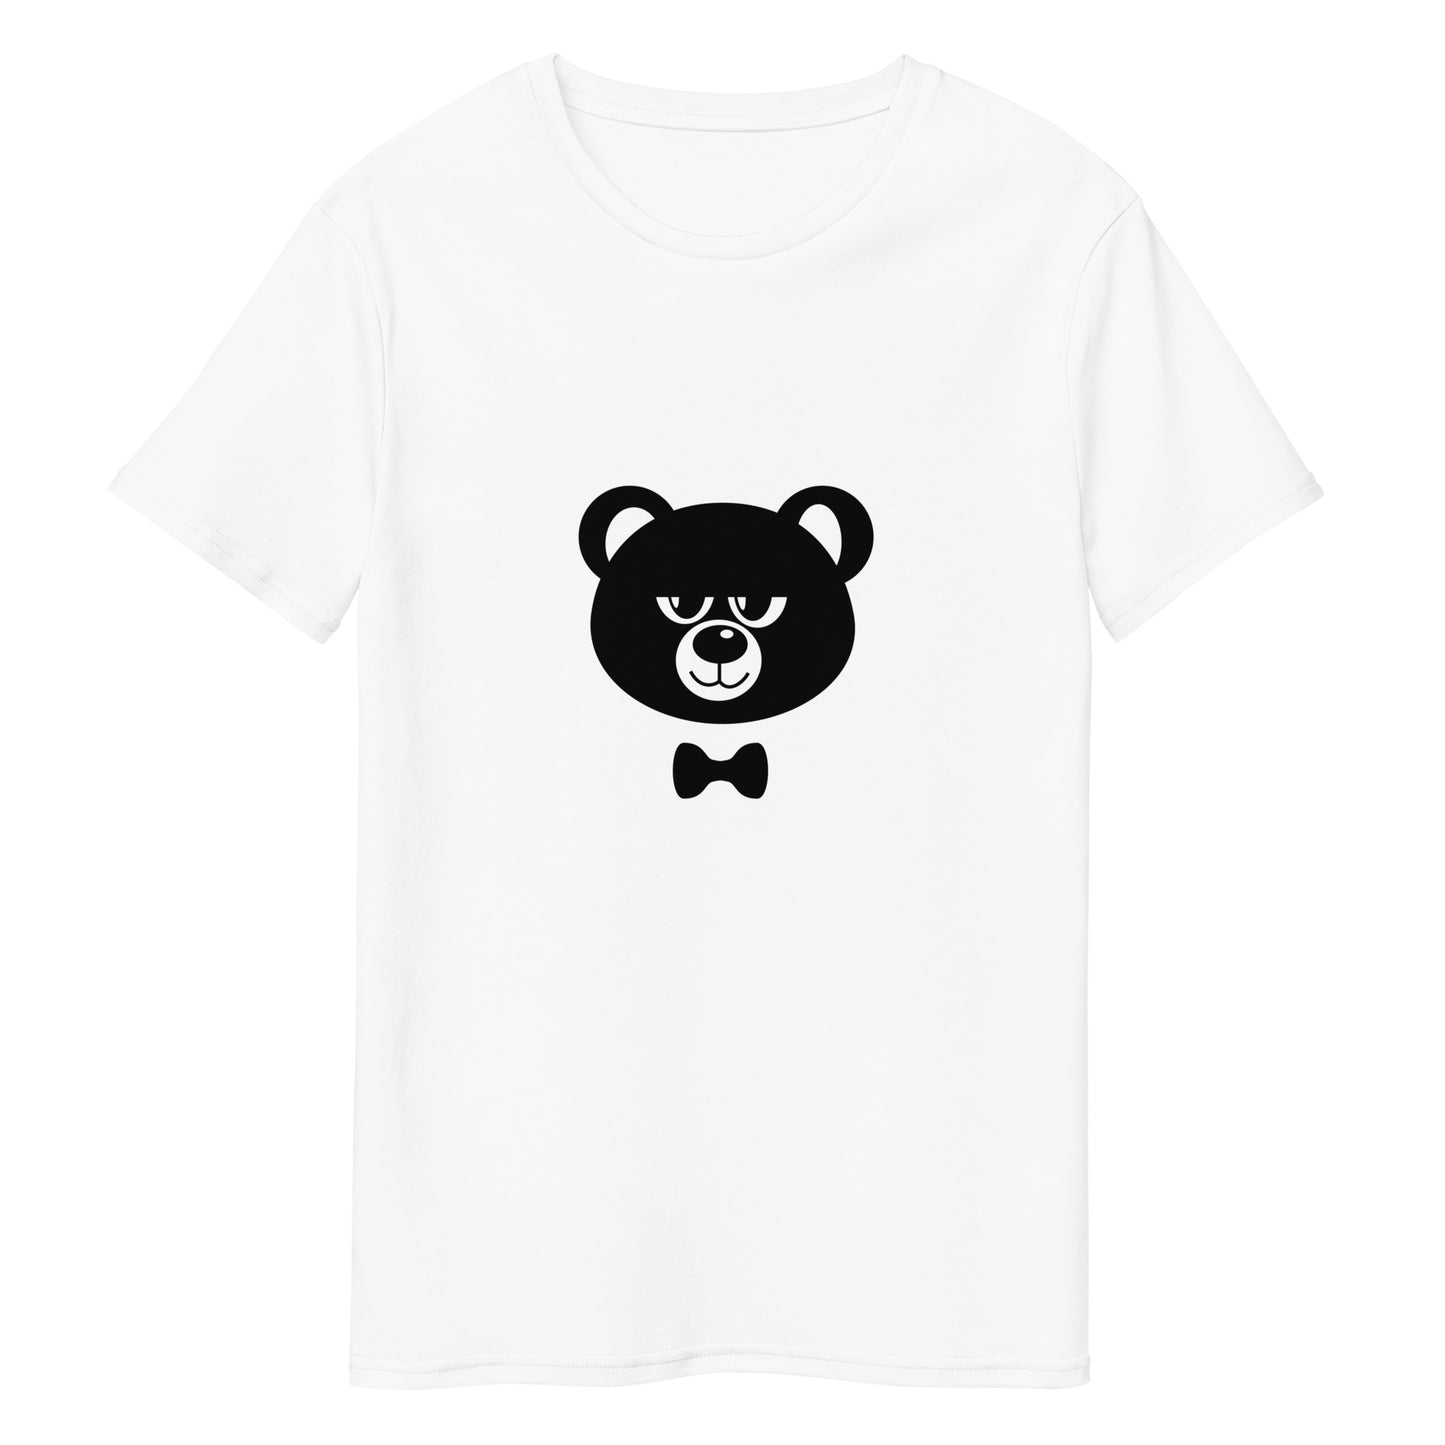 Herren-T-Shirt aus Premium-Baumwolle "HBF" (Augen halb offen)